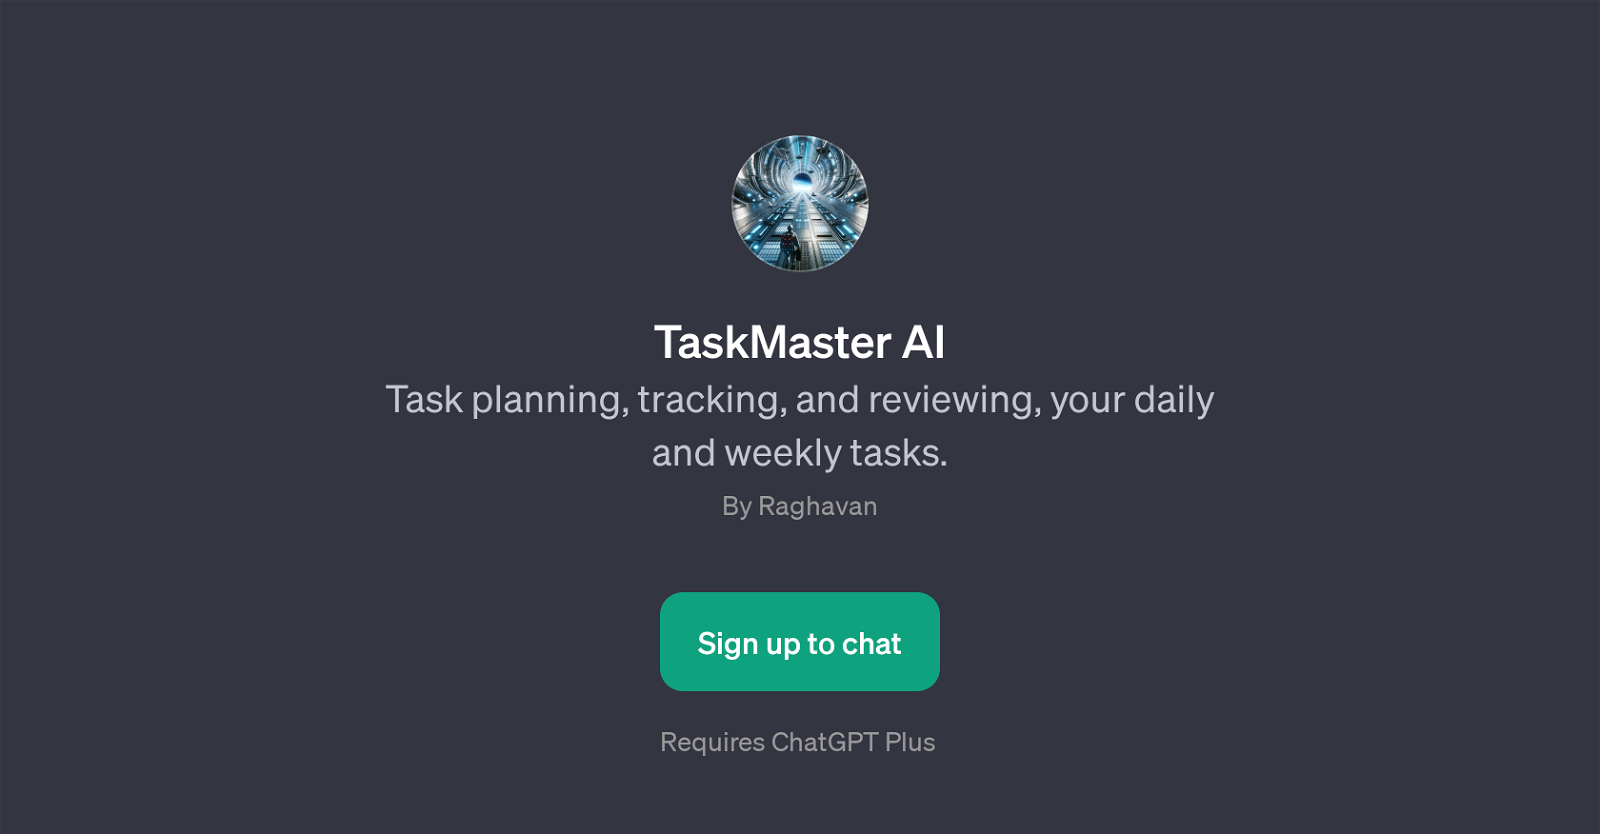 TaskMaster AI website